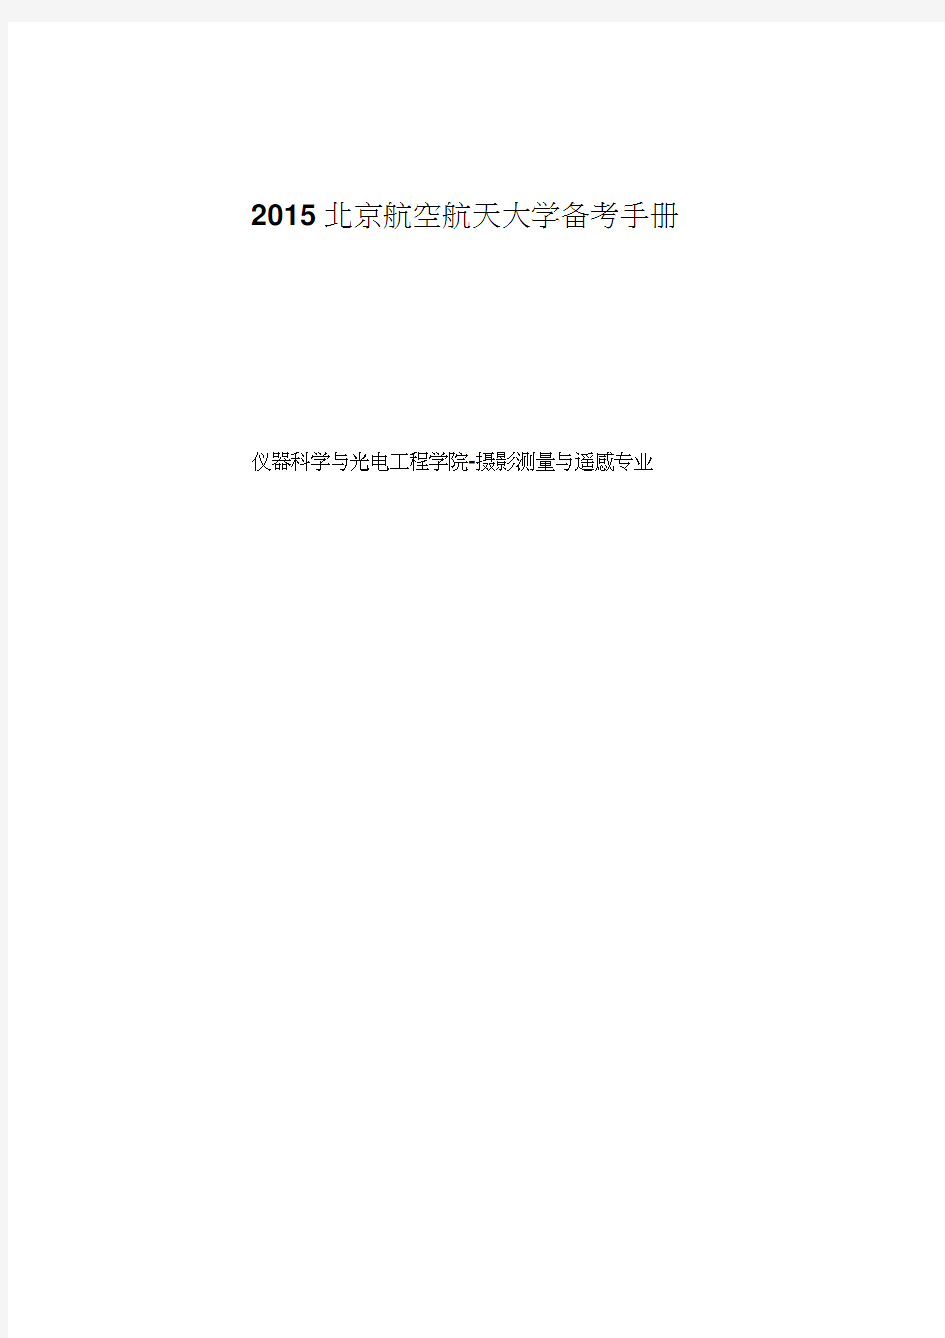 北京航空航天大学摄影测量与遥感专业备考手册1